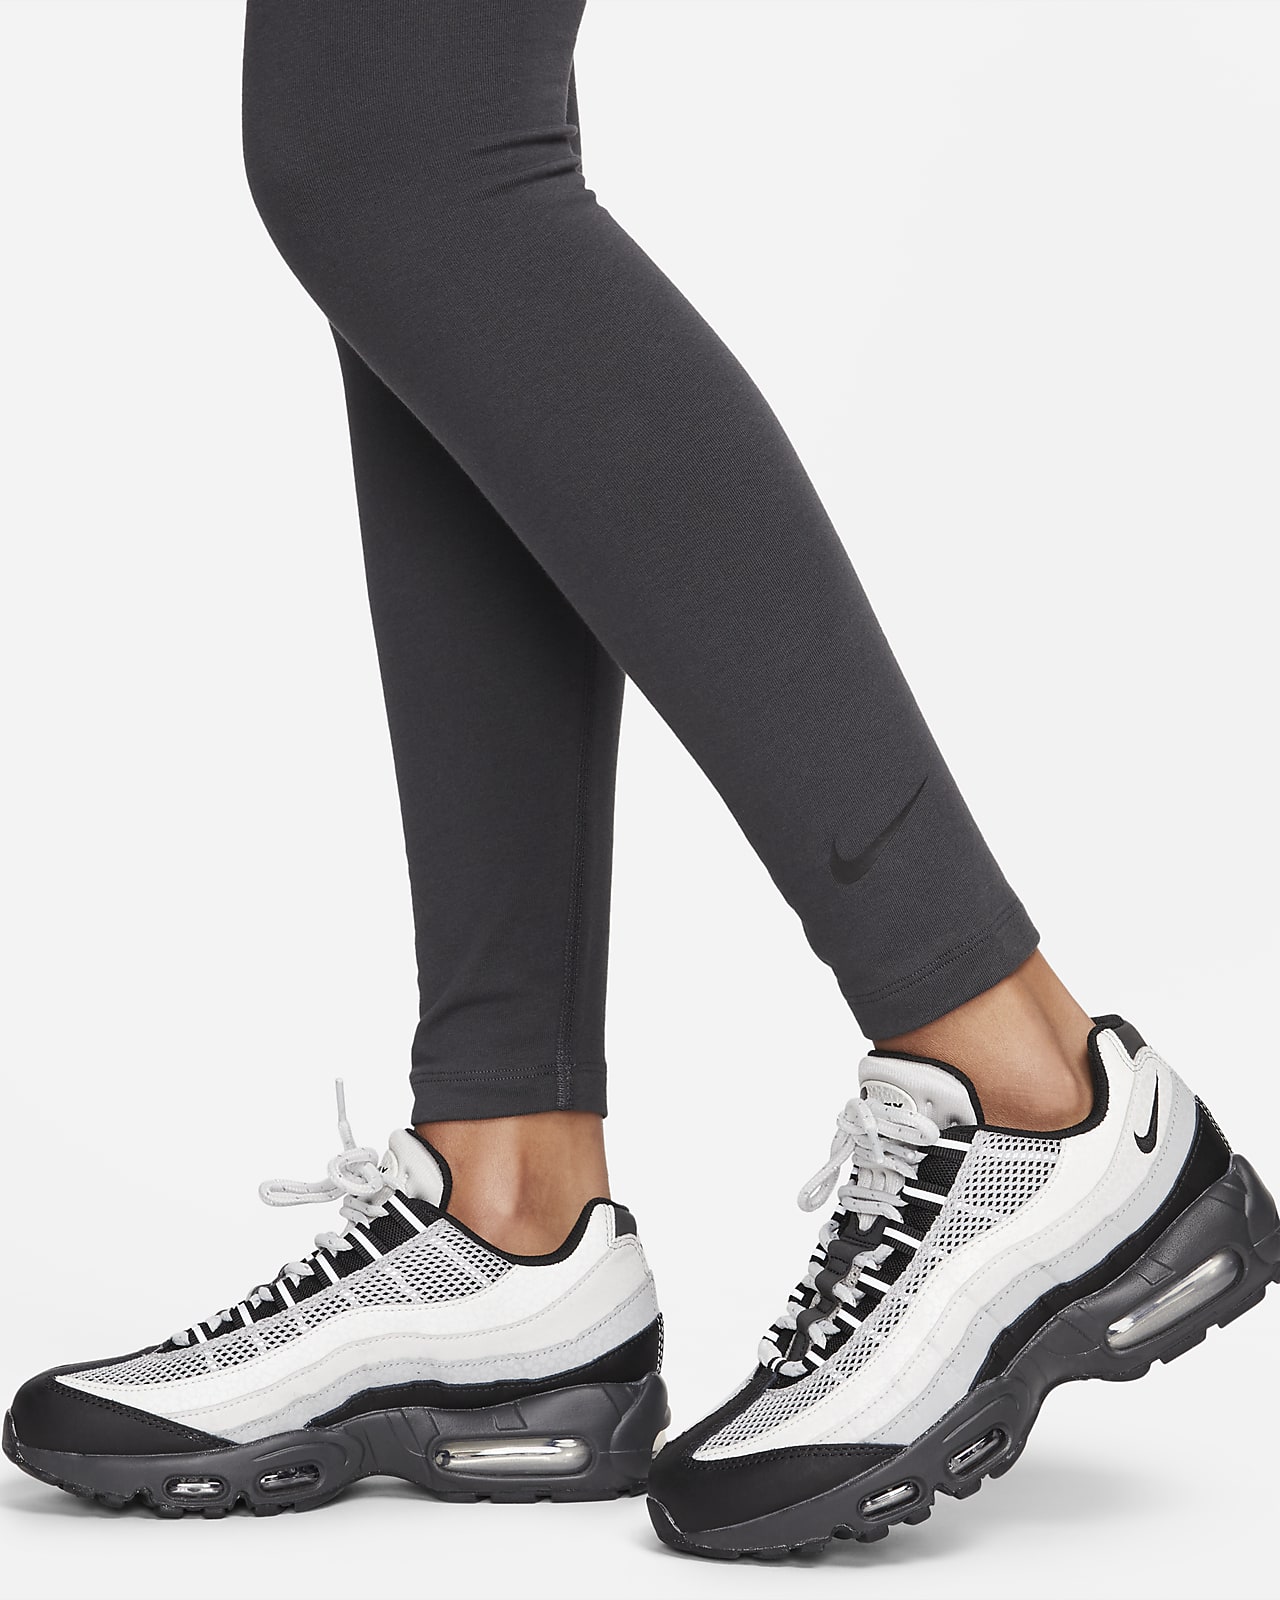 Jogging sportswear club noir femme - Nike